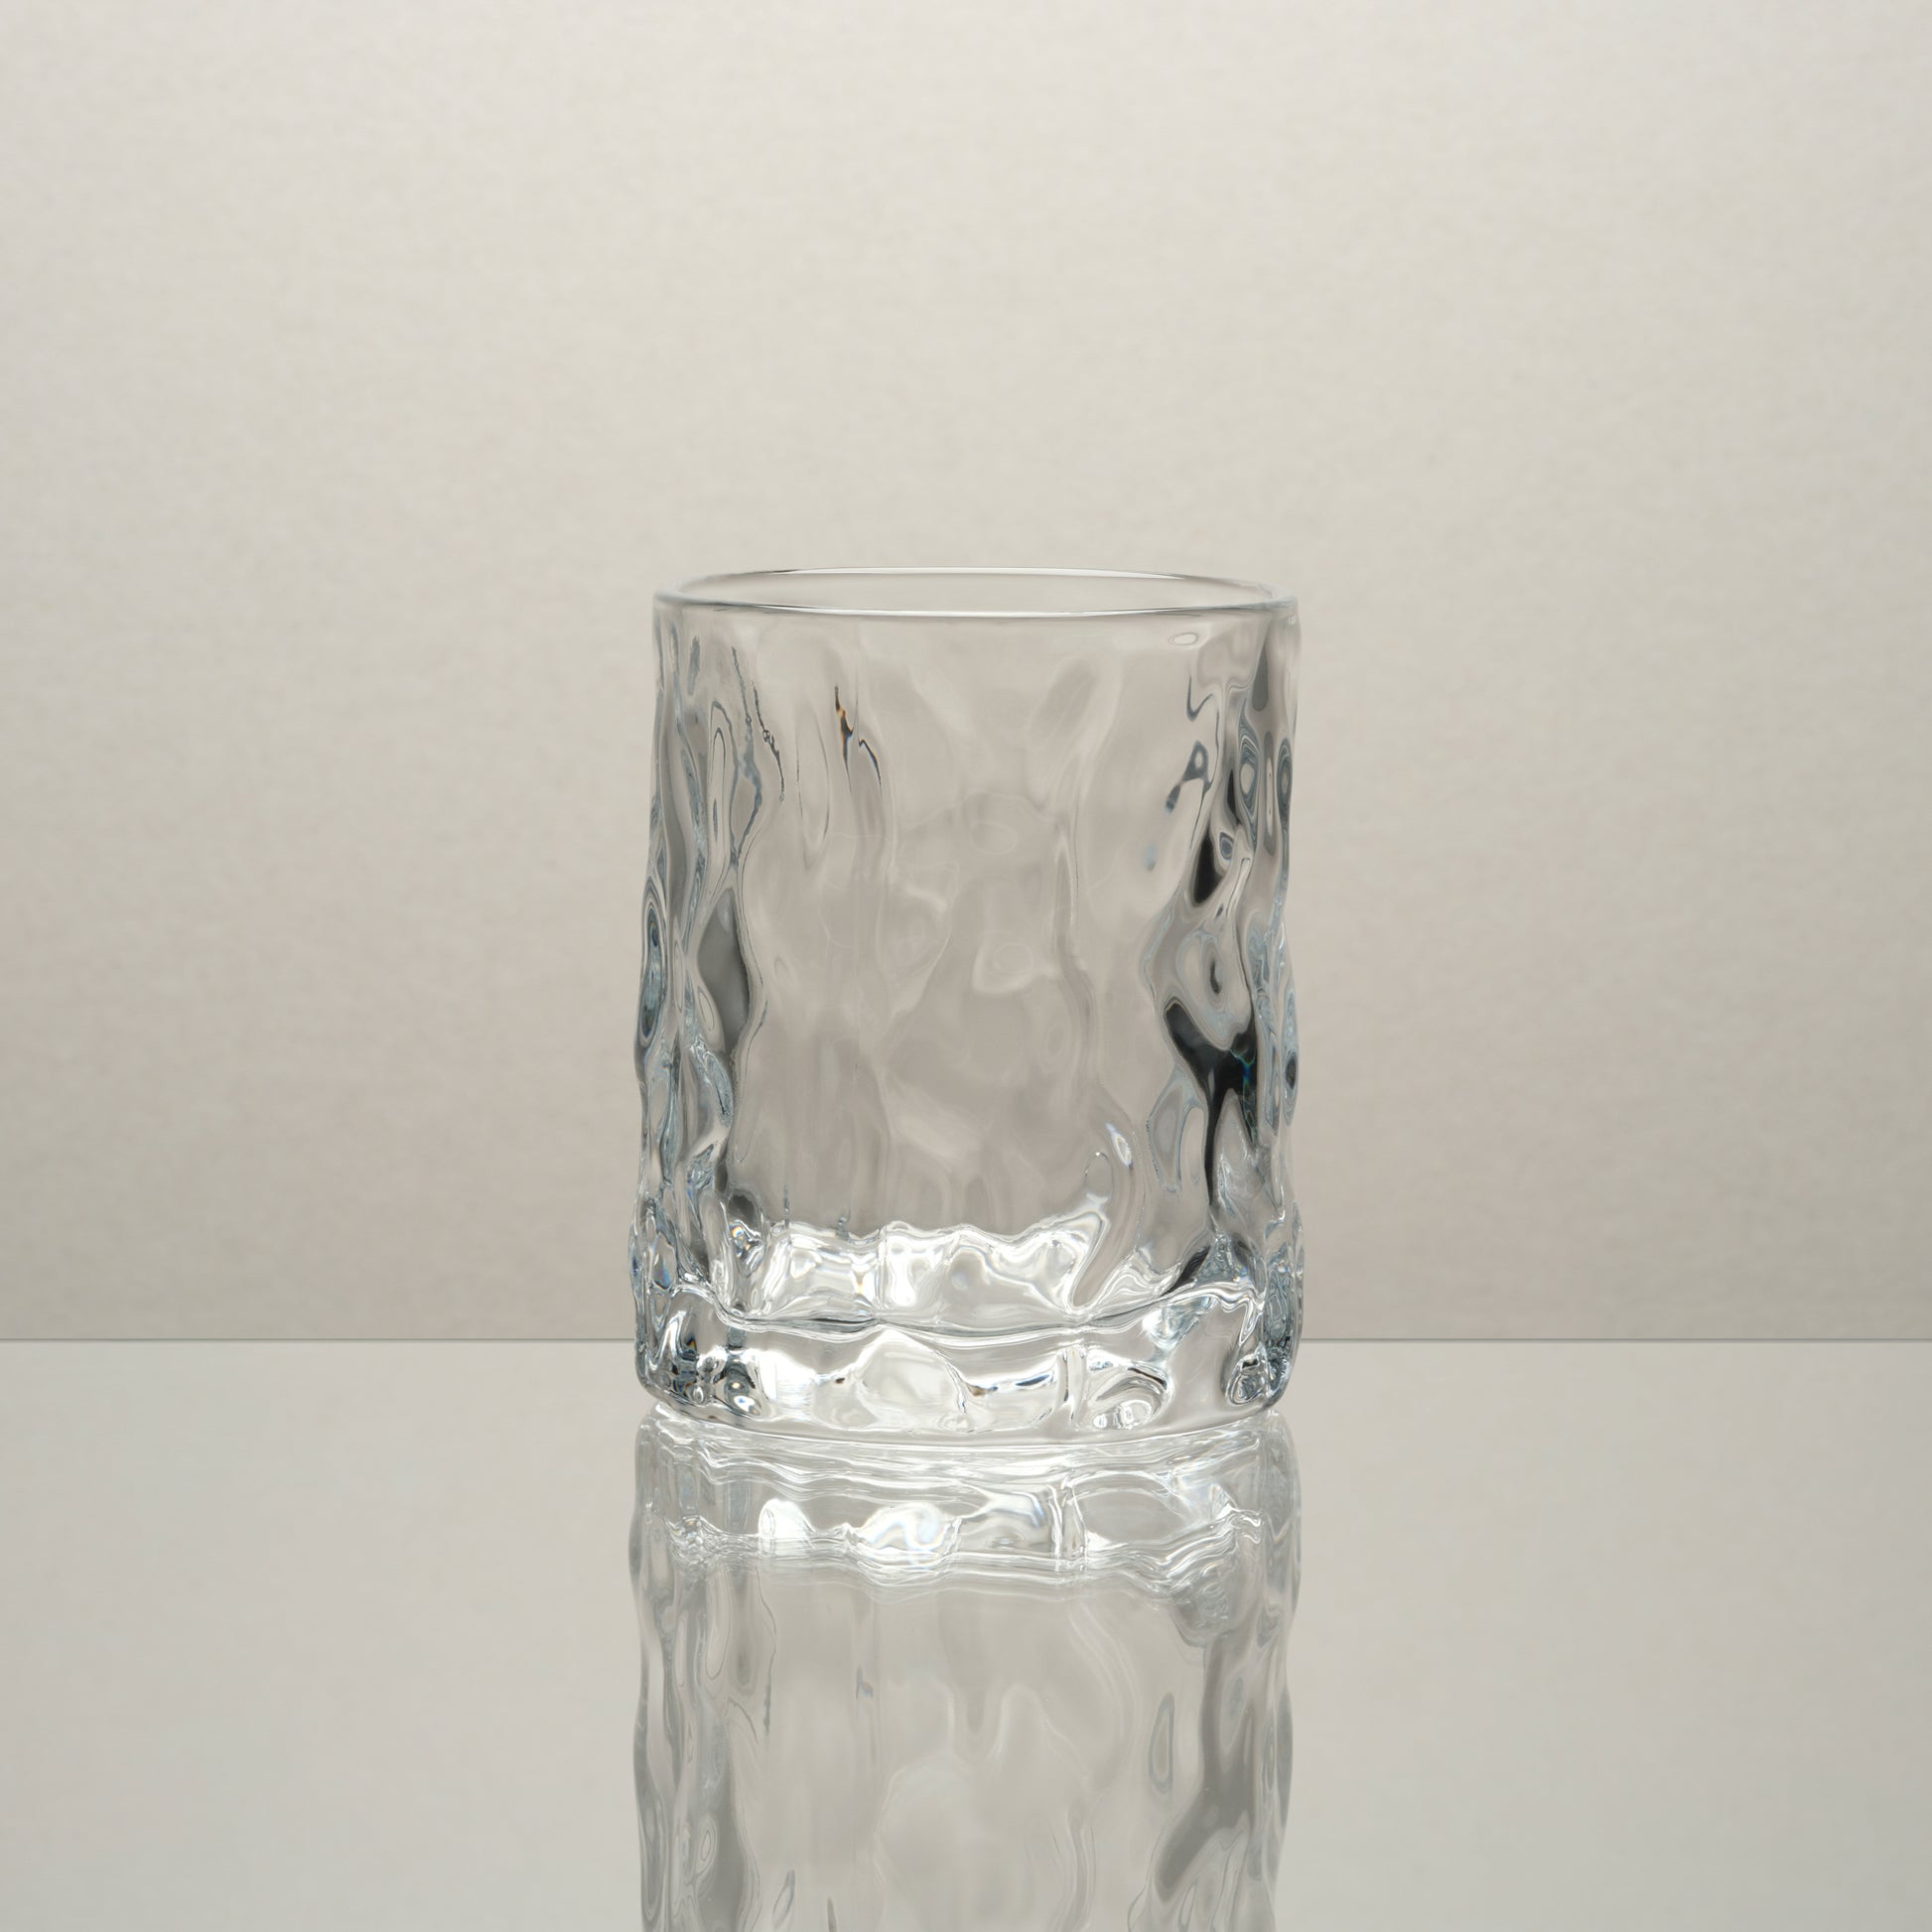 Japan Inspired Hammer Glass